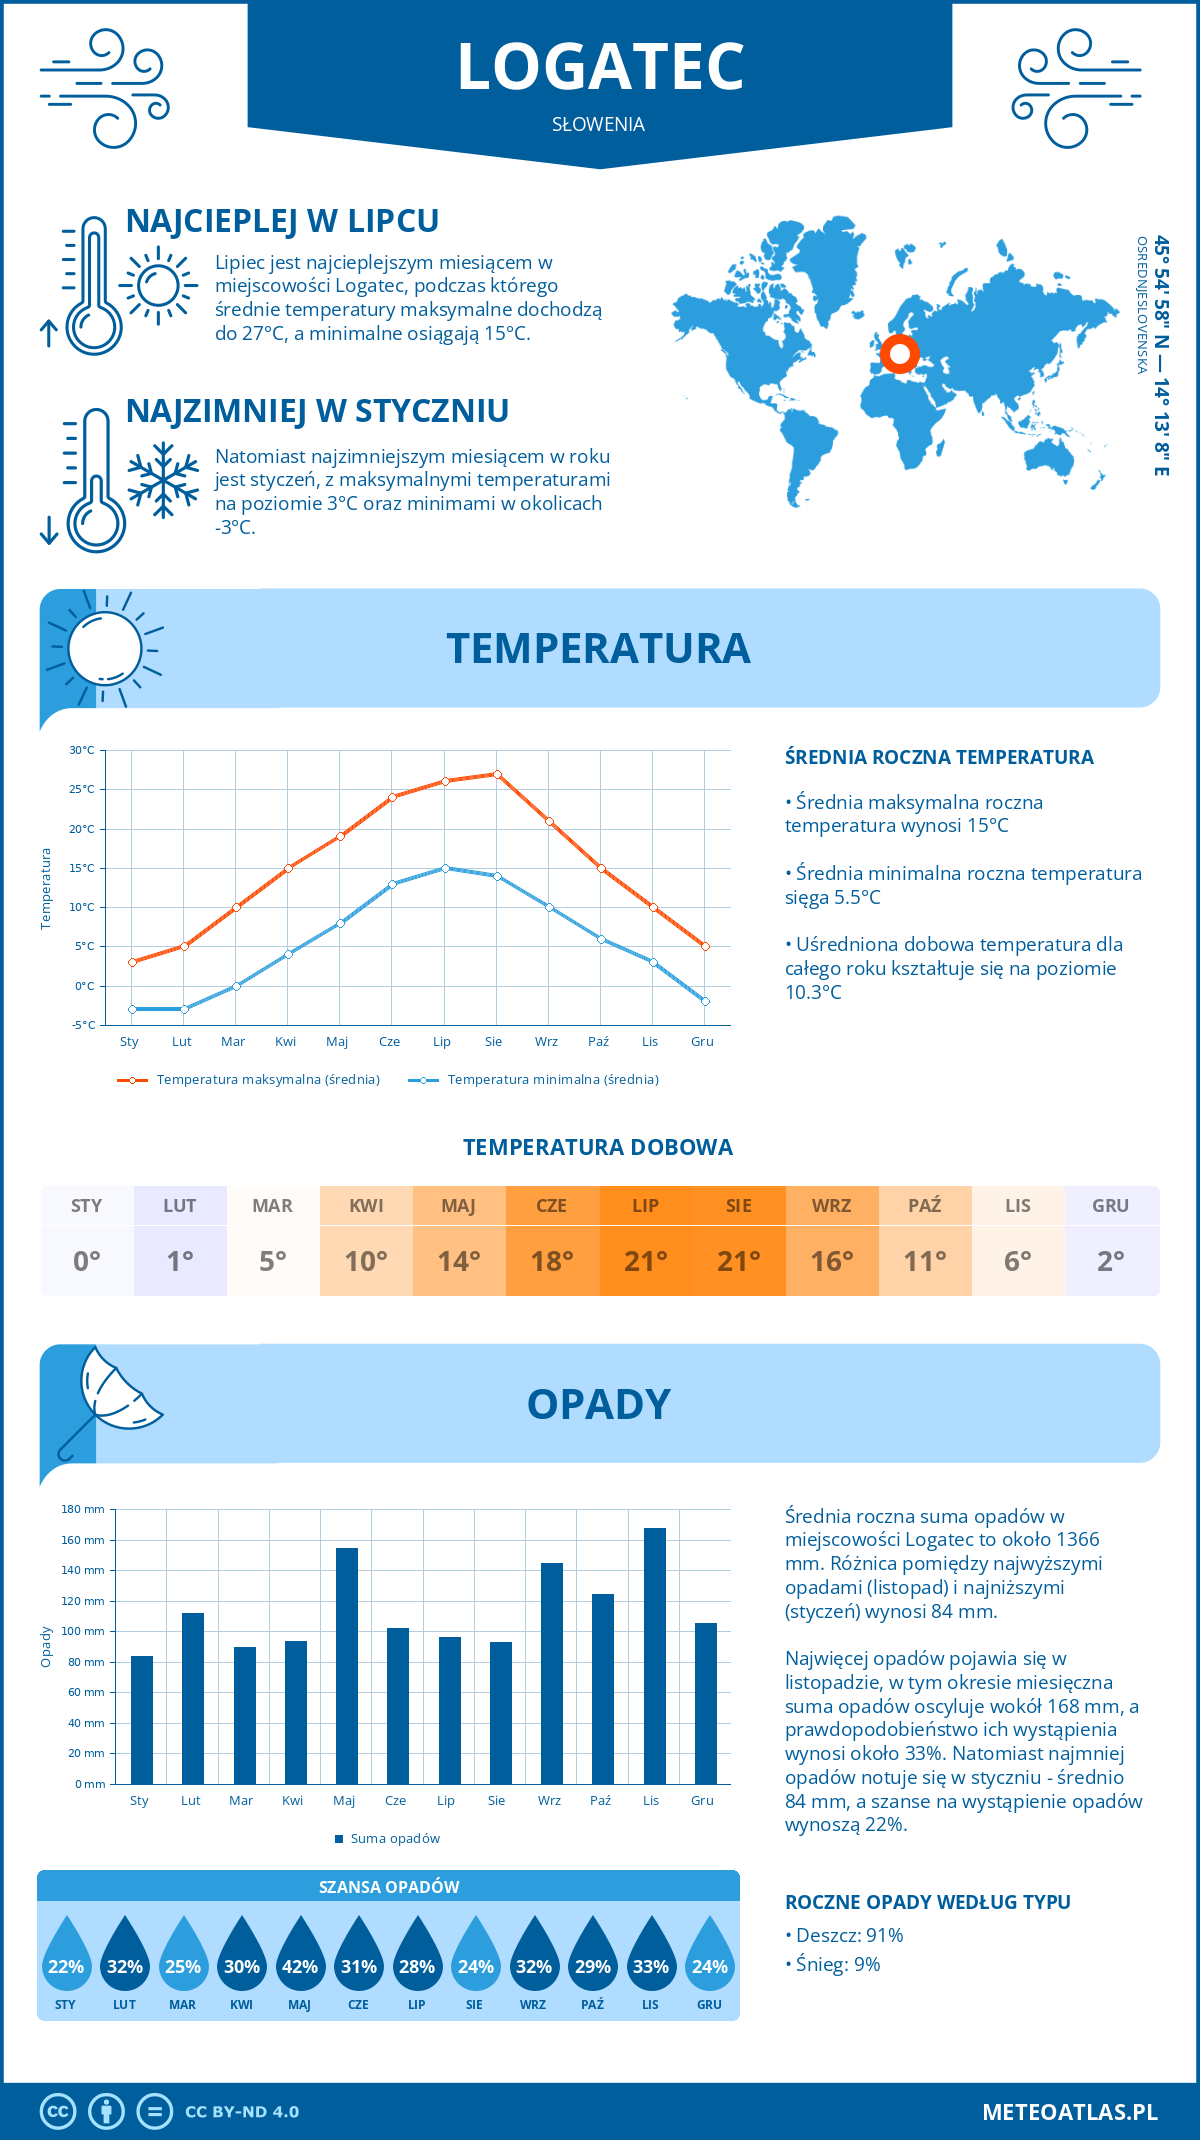 Pogoda Logatec (Słowenia). Temperatura oraz opady.